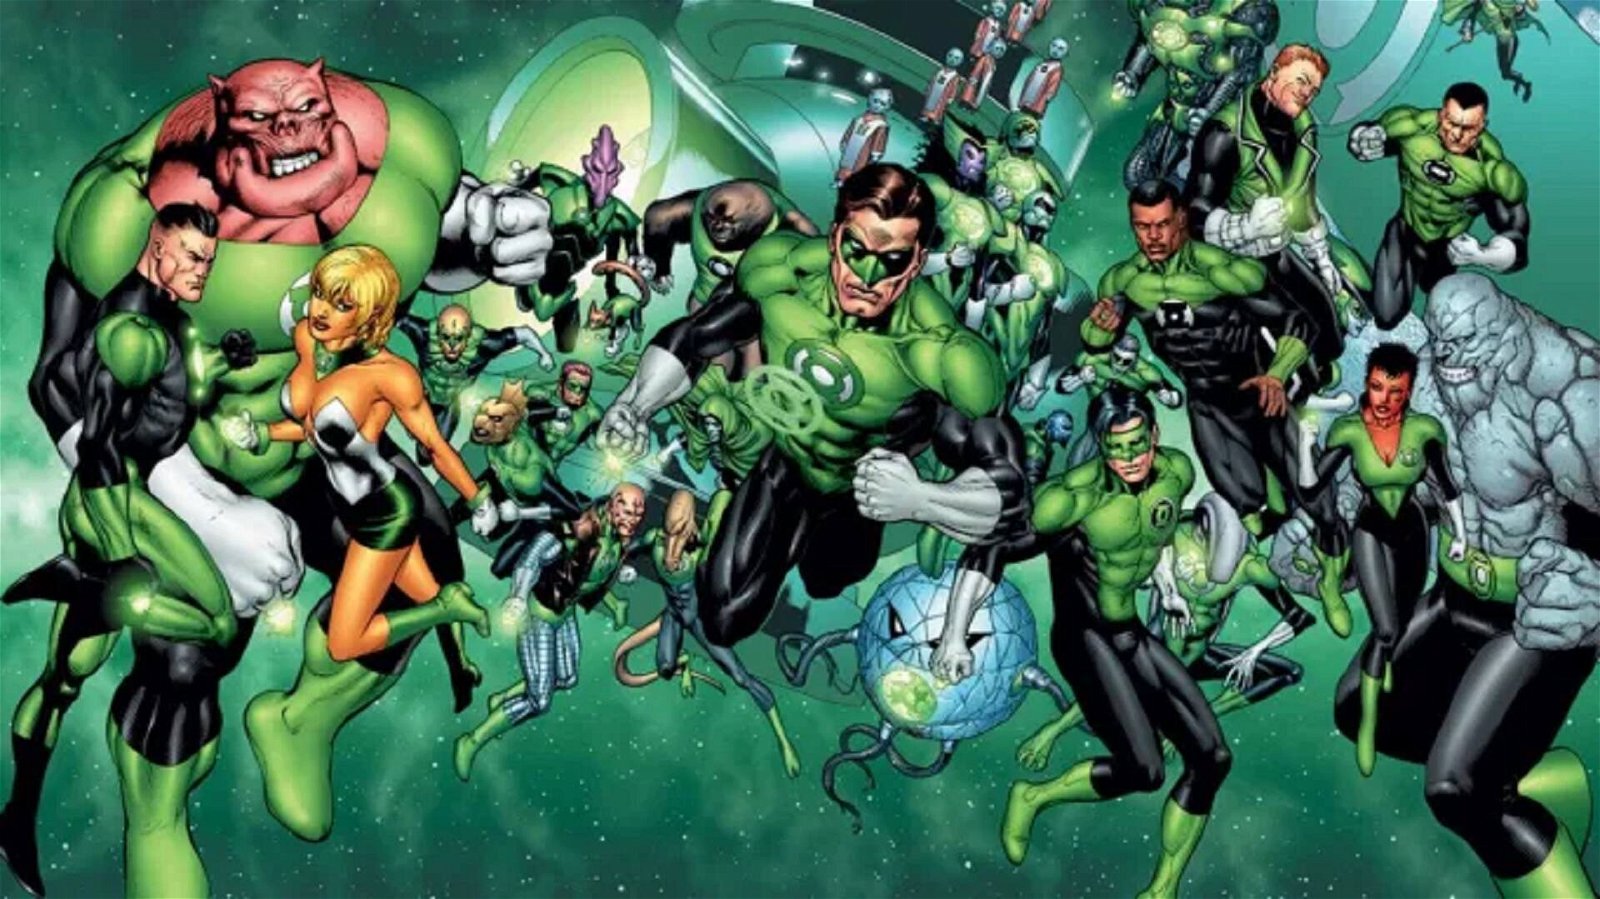 Immagine di Green Lantern - primi dettagli della serie TV